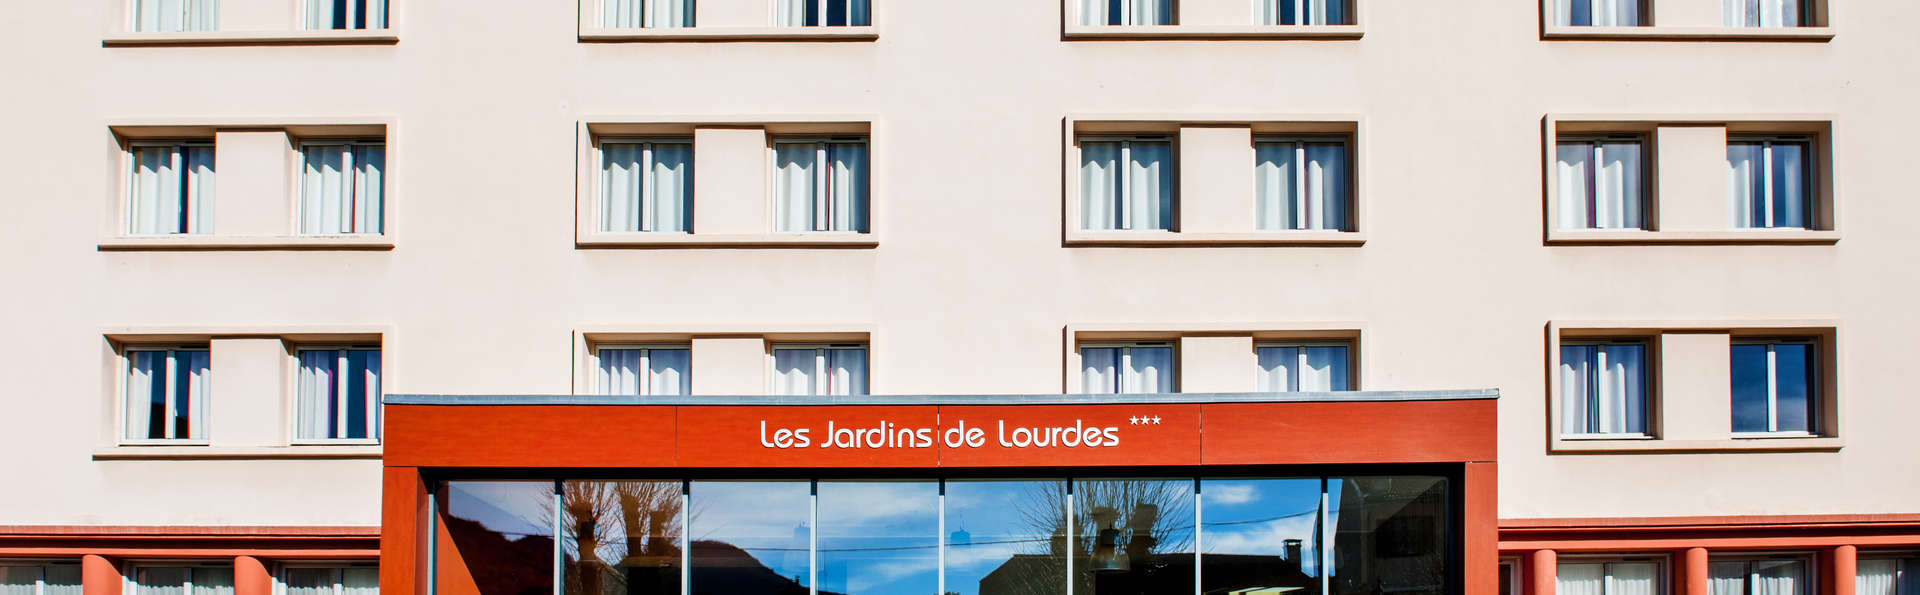 Residence Les Jardins De Lourdes 3* - Lourdes, France concernant Les Jardins De Lourdes